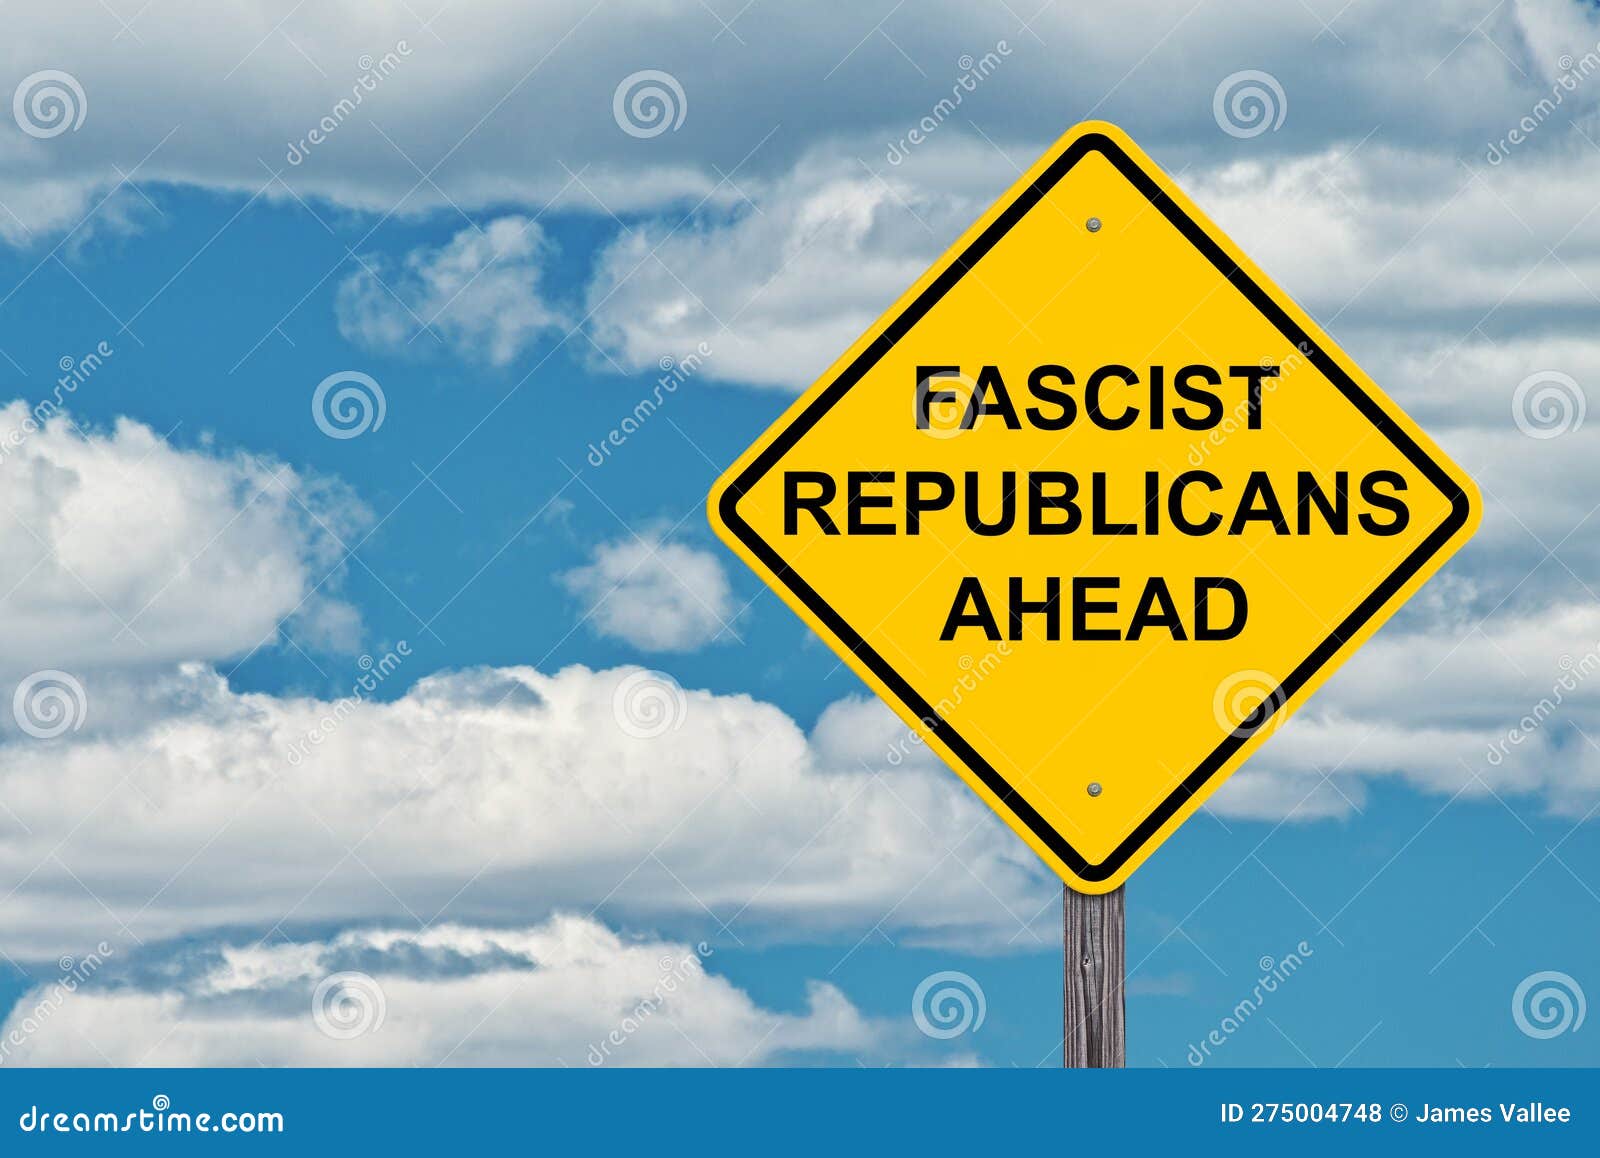 fascist republicans ahead caution sign - blue sky background